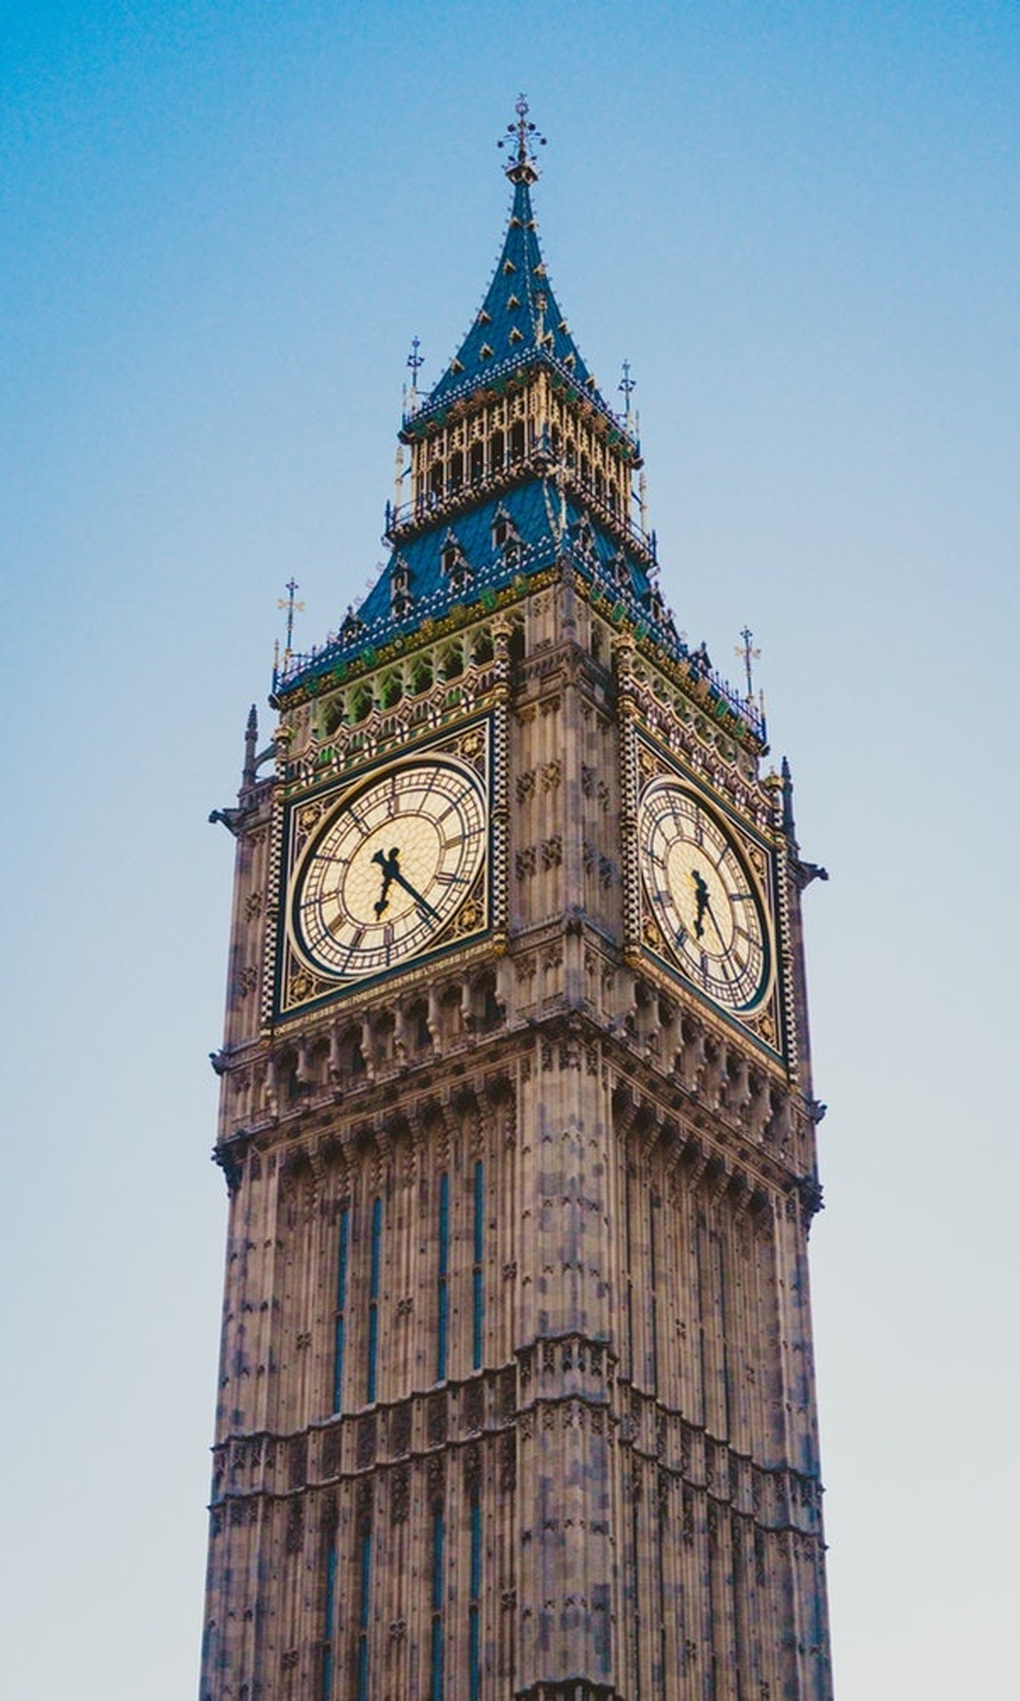 Có gì trong tháp đồng hồ đạt độ chính xác từng giây suốt hơn 150 năm? - 3